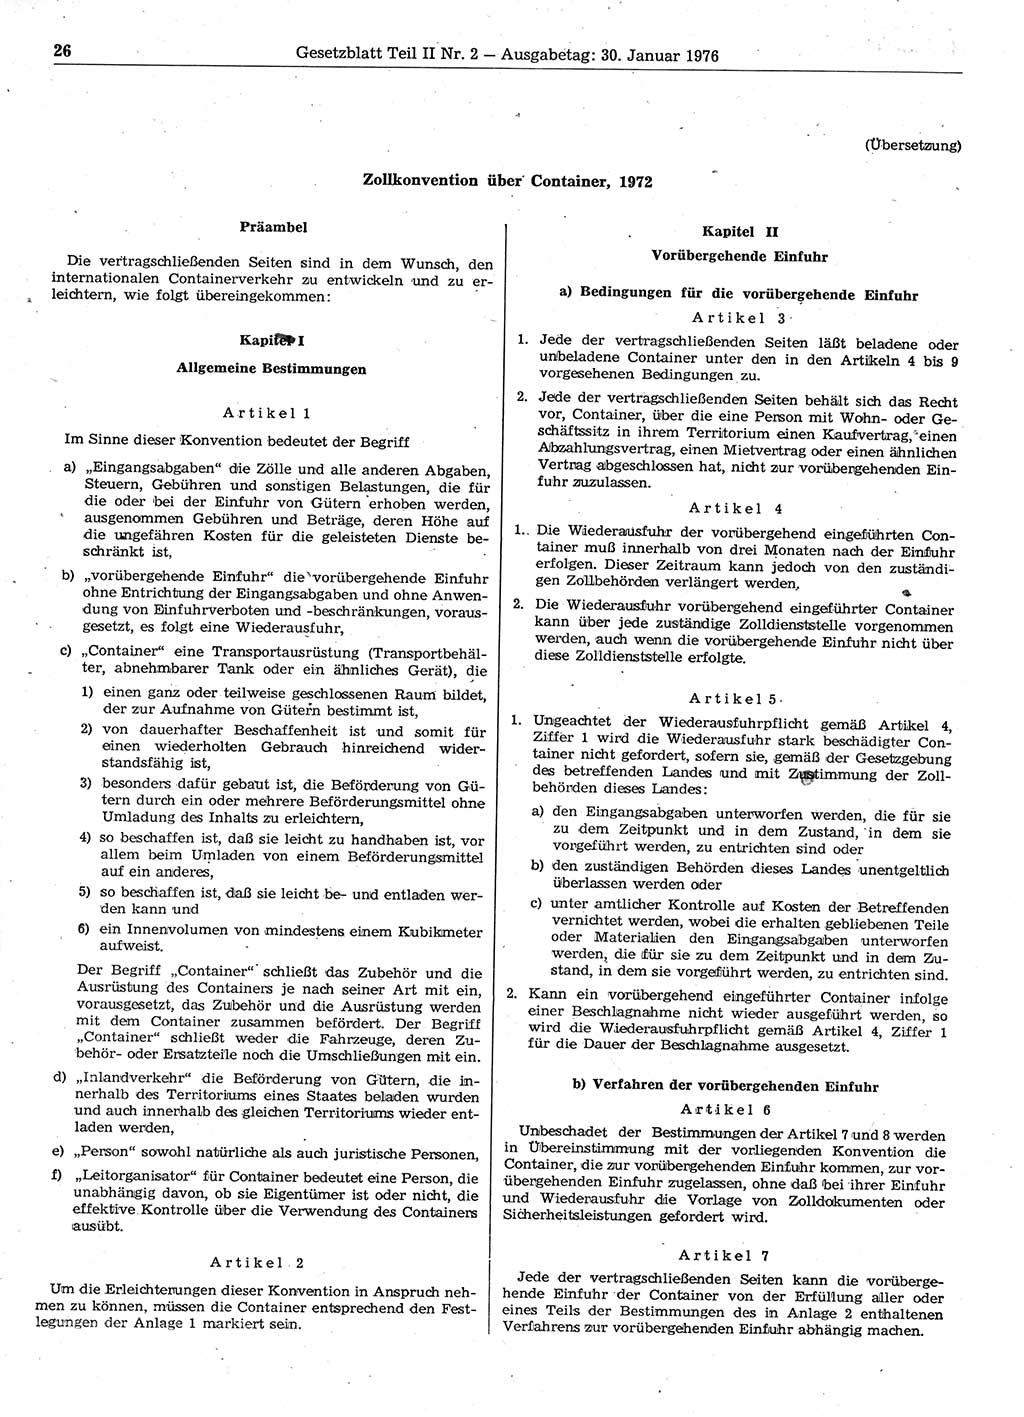 Gesetzblatt (GBl.) der Deutschen Demokratischen Republik (DDR) Teil ⅠⅠ 1976, Seite 26 (GBl. DDR ⅠⅠ 1976, S. 26)